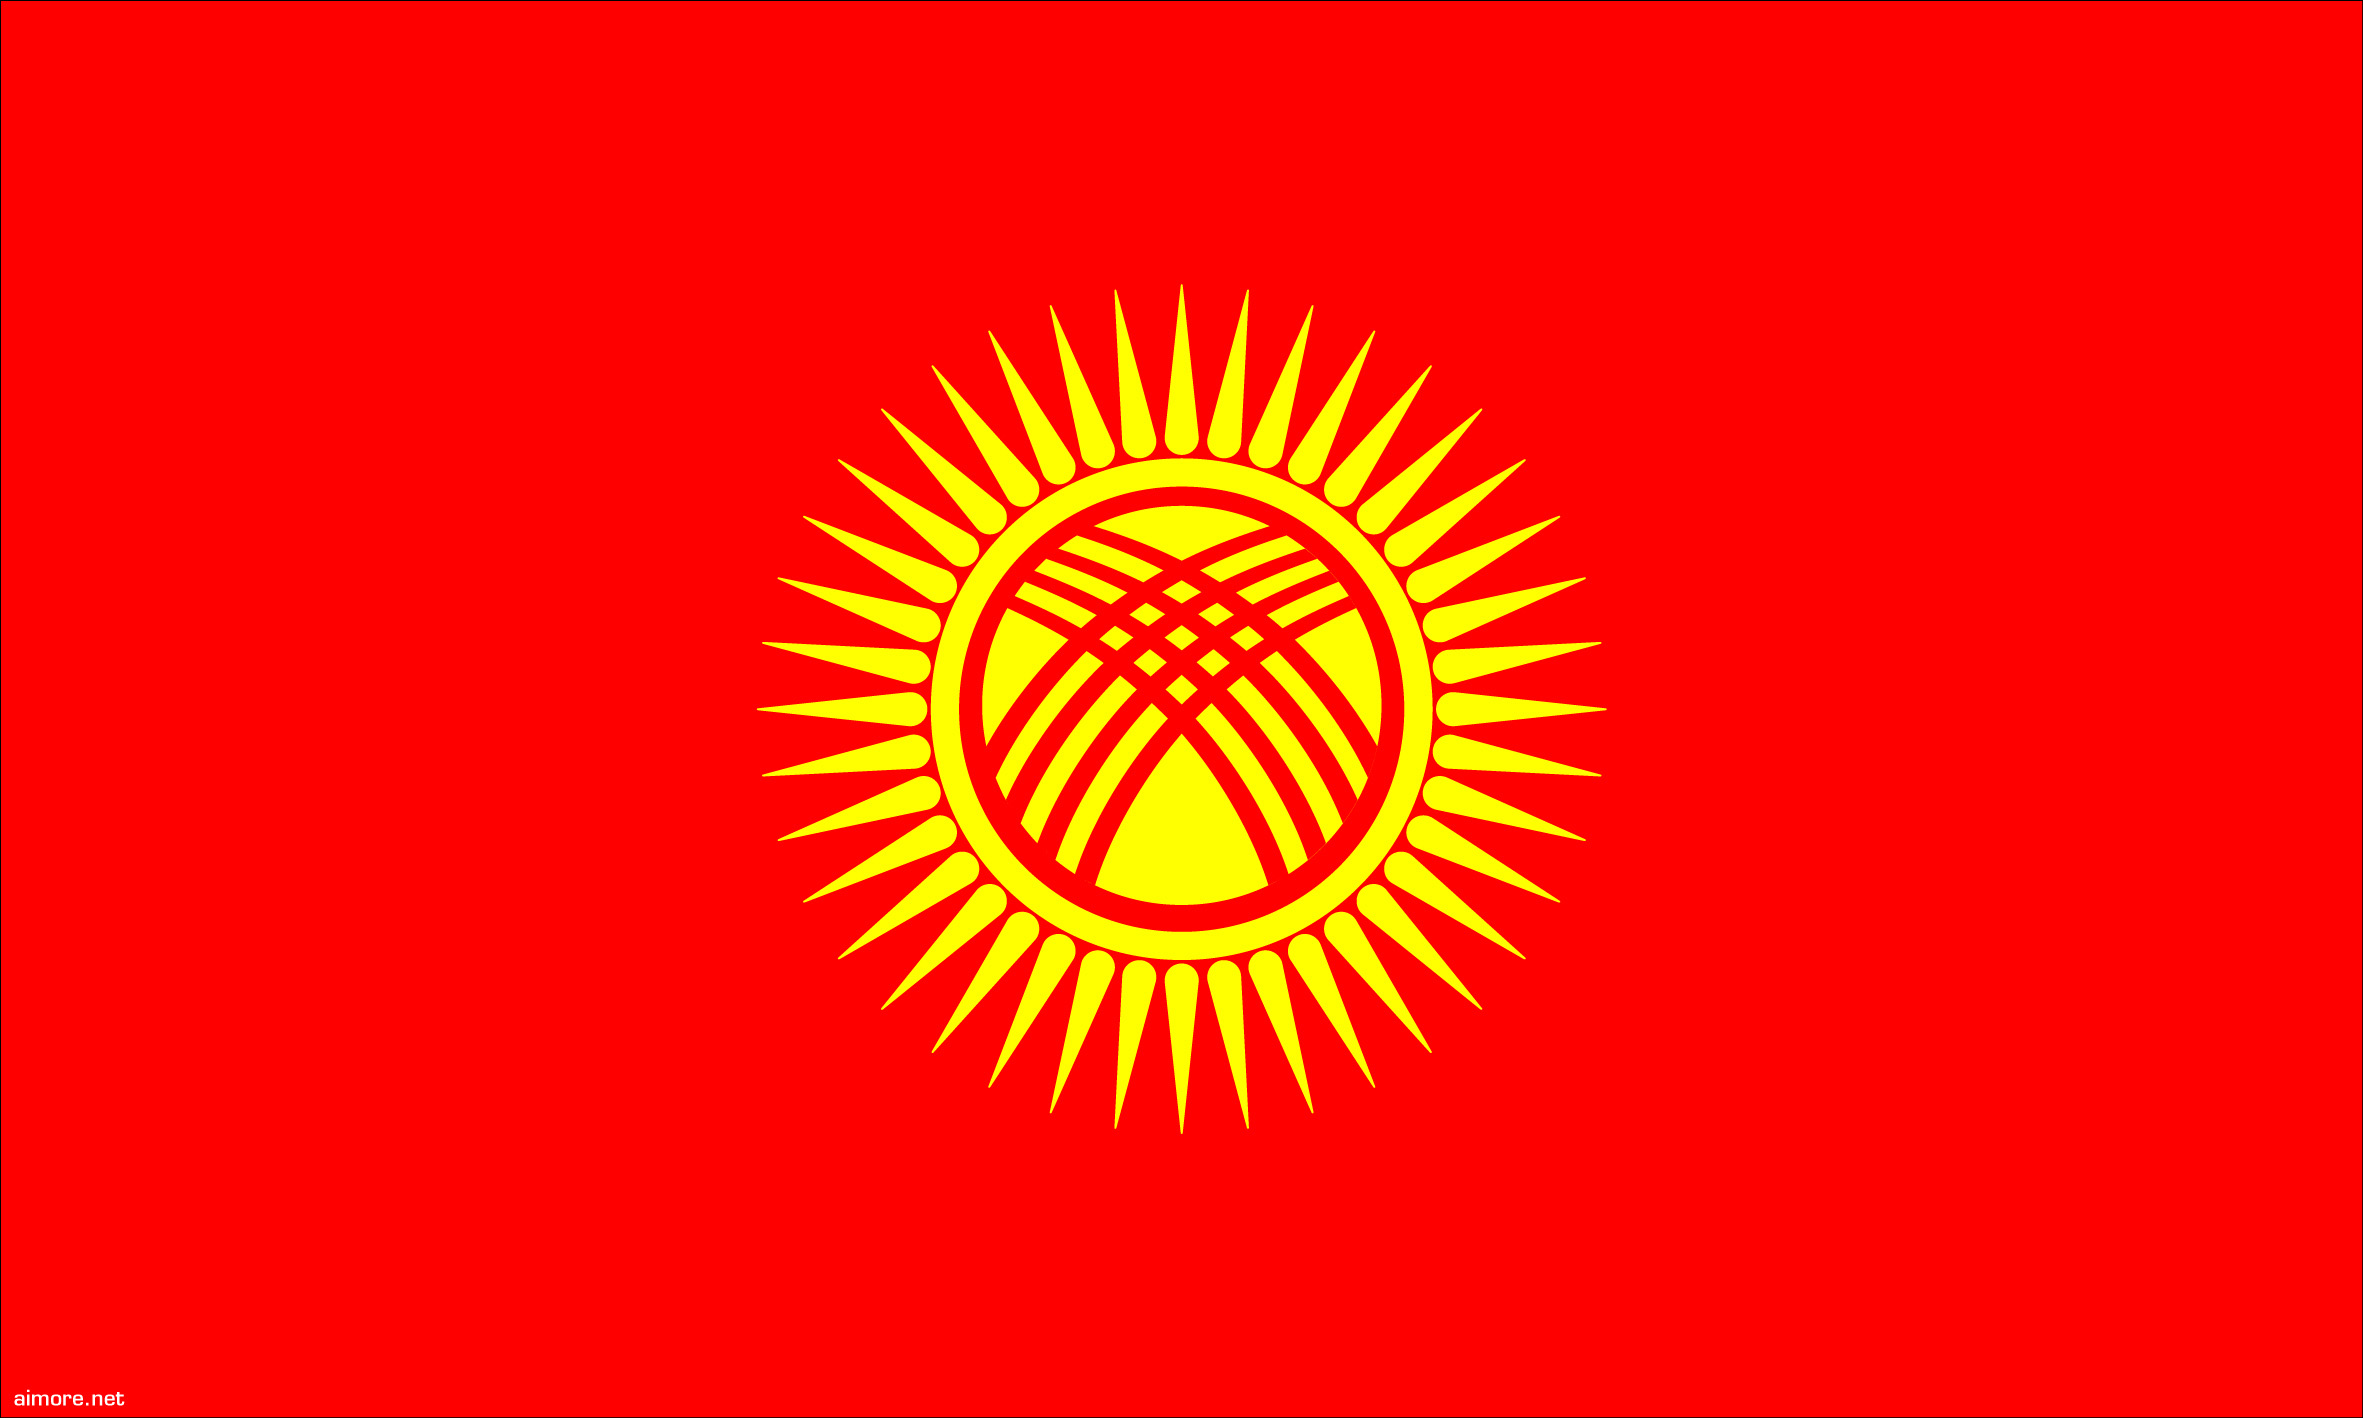 Kyrgyzstan, Kyrgyz Republic